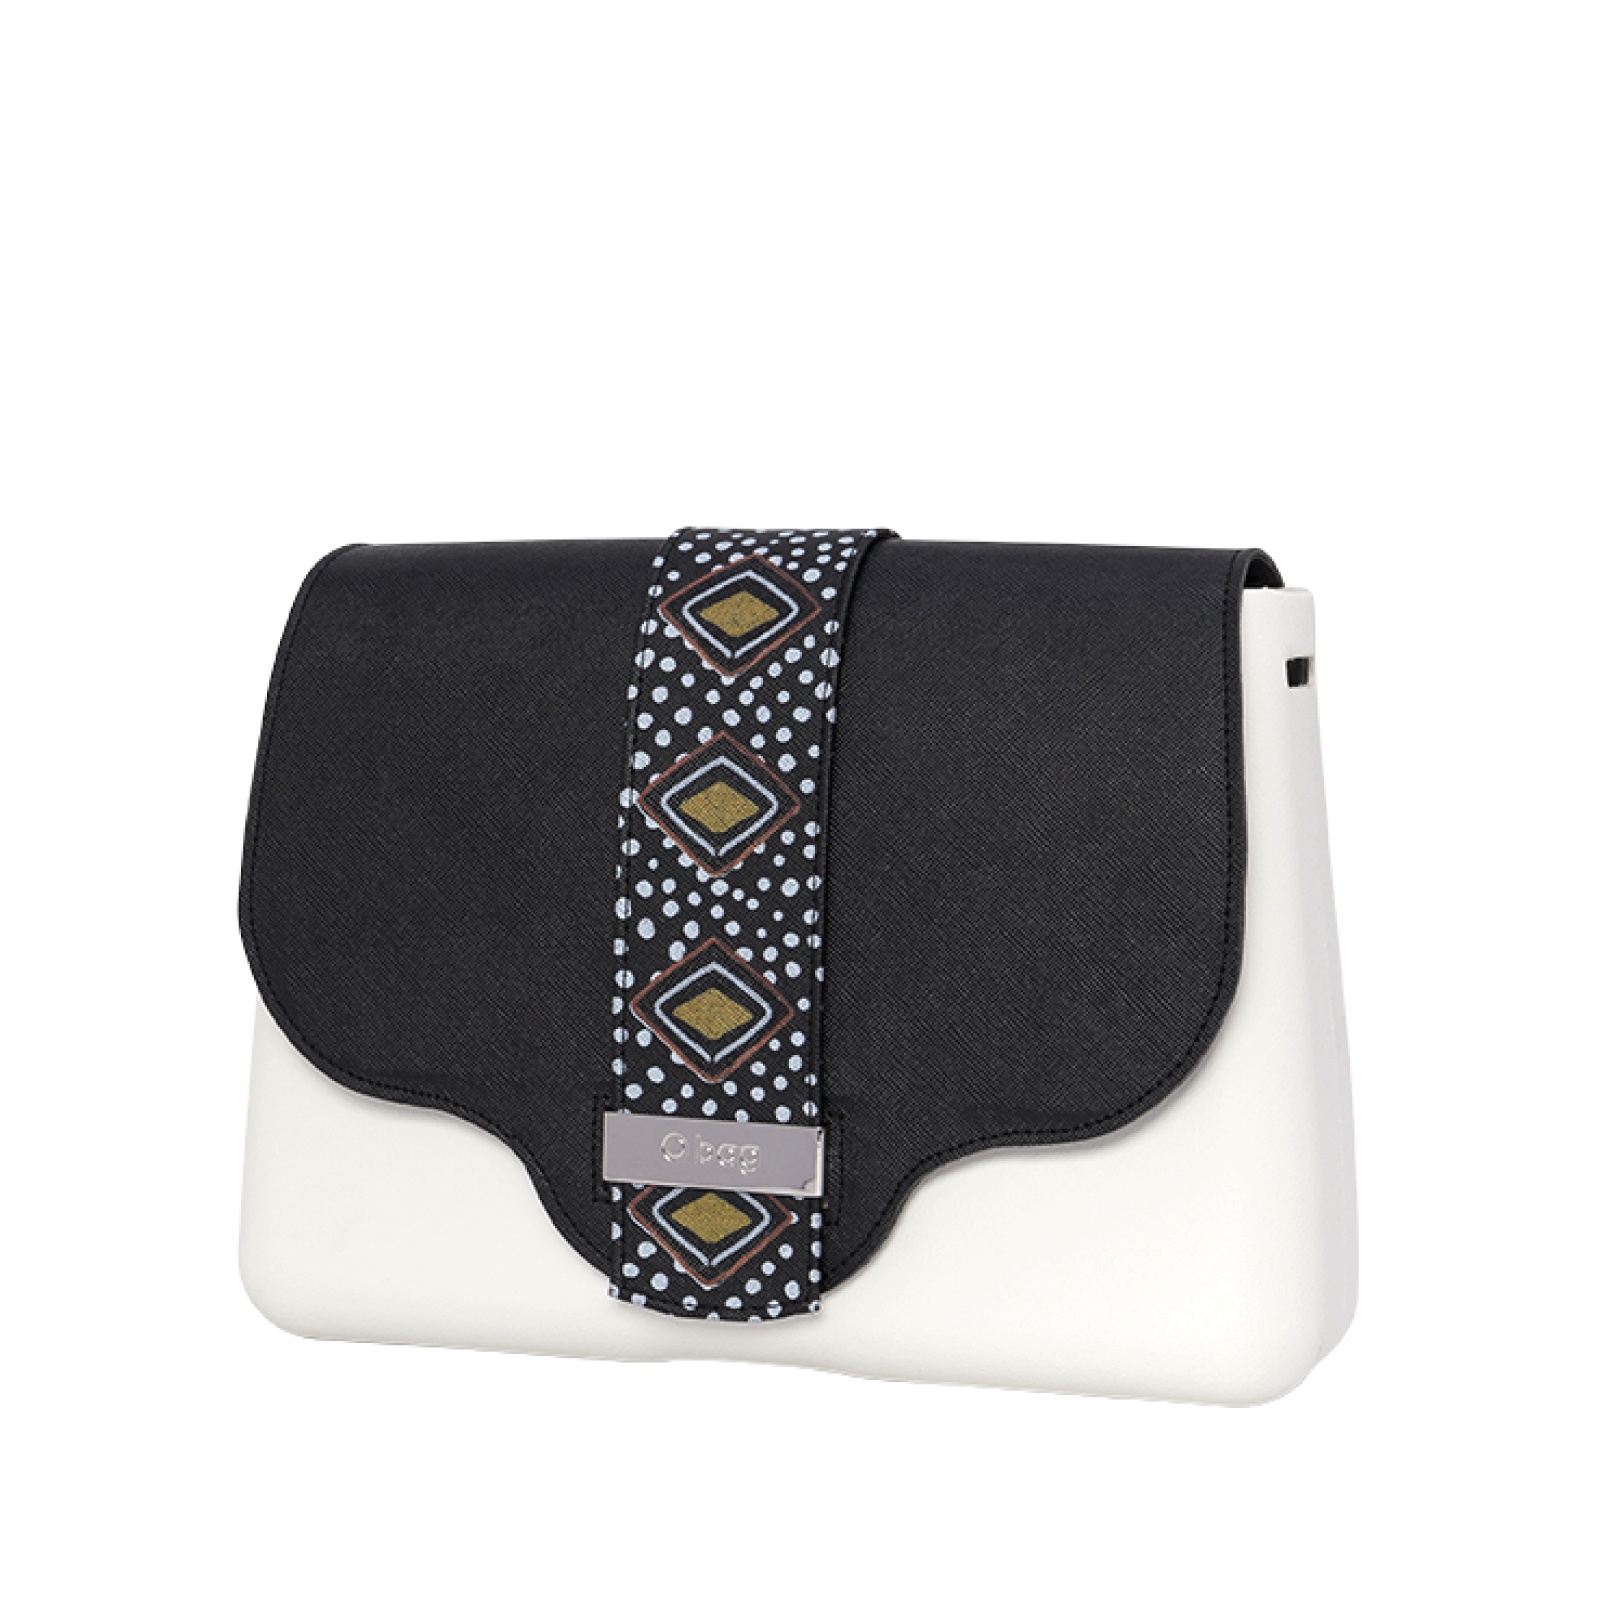 O Bag Glam Flap Masai Print Saffiano Eco Leather – Brick/Black